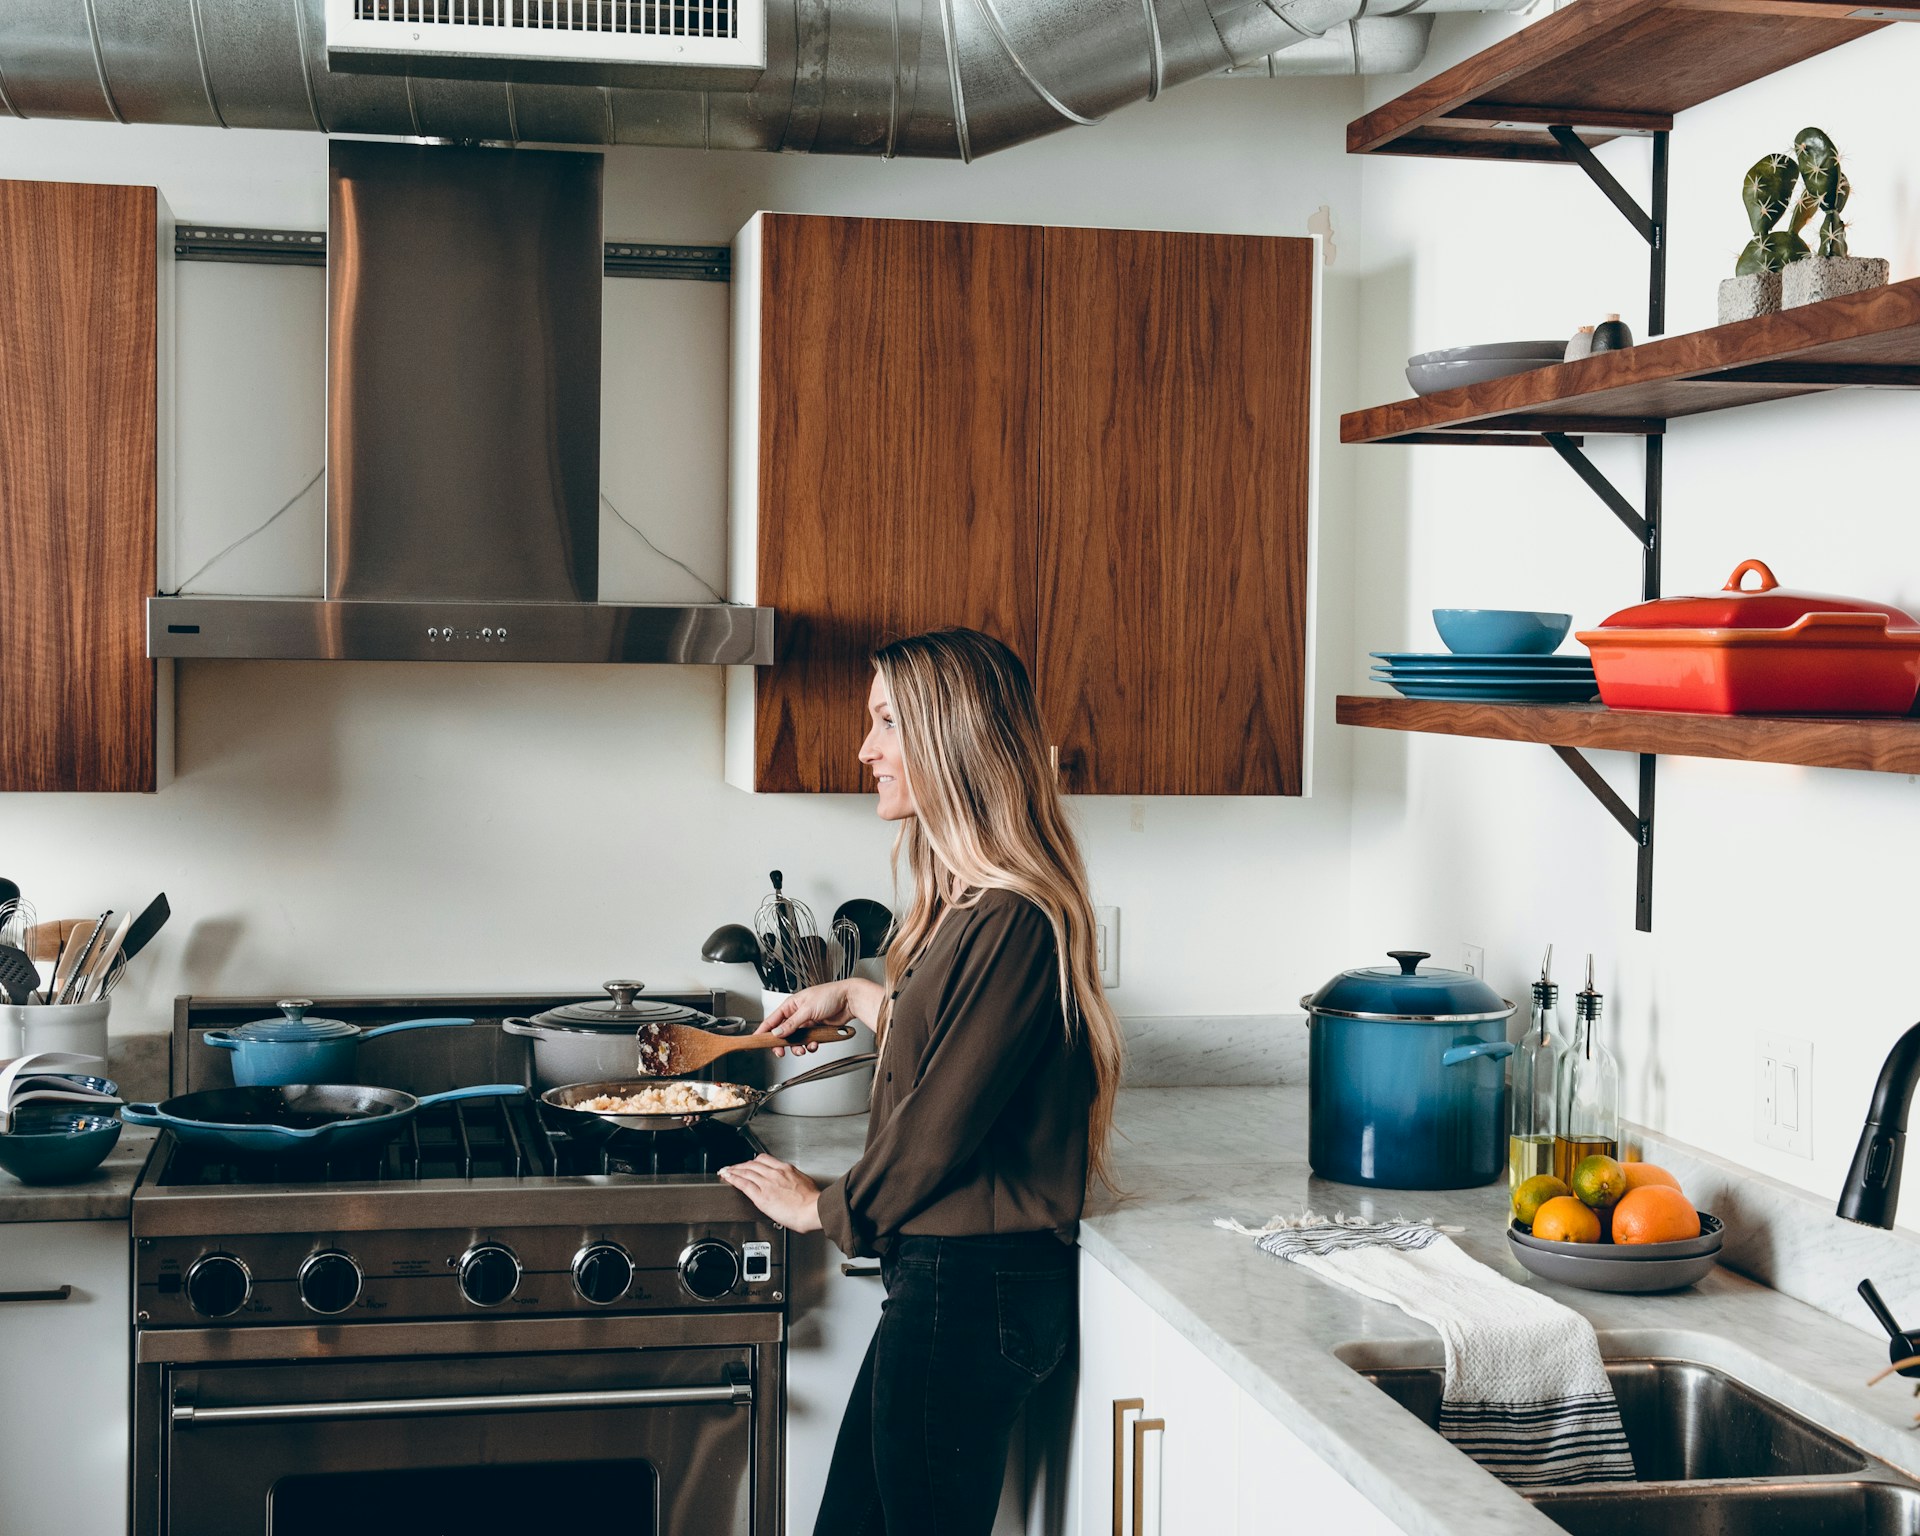 4 λάθη που κάνεις όταν καθαρίζεις την κουζίνα σου και κάνουν κακό παρά καλό